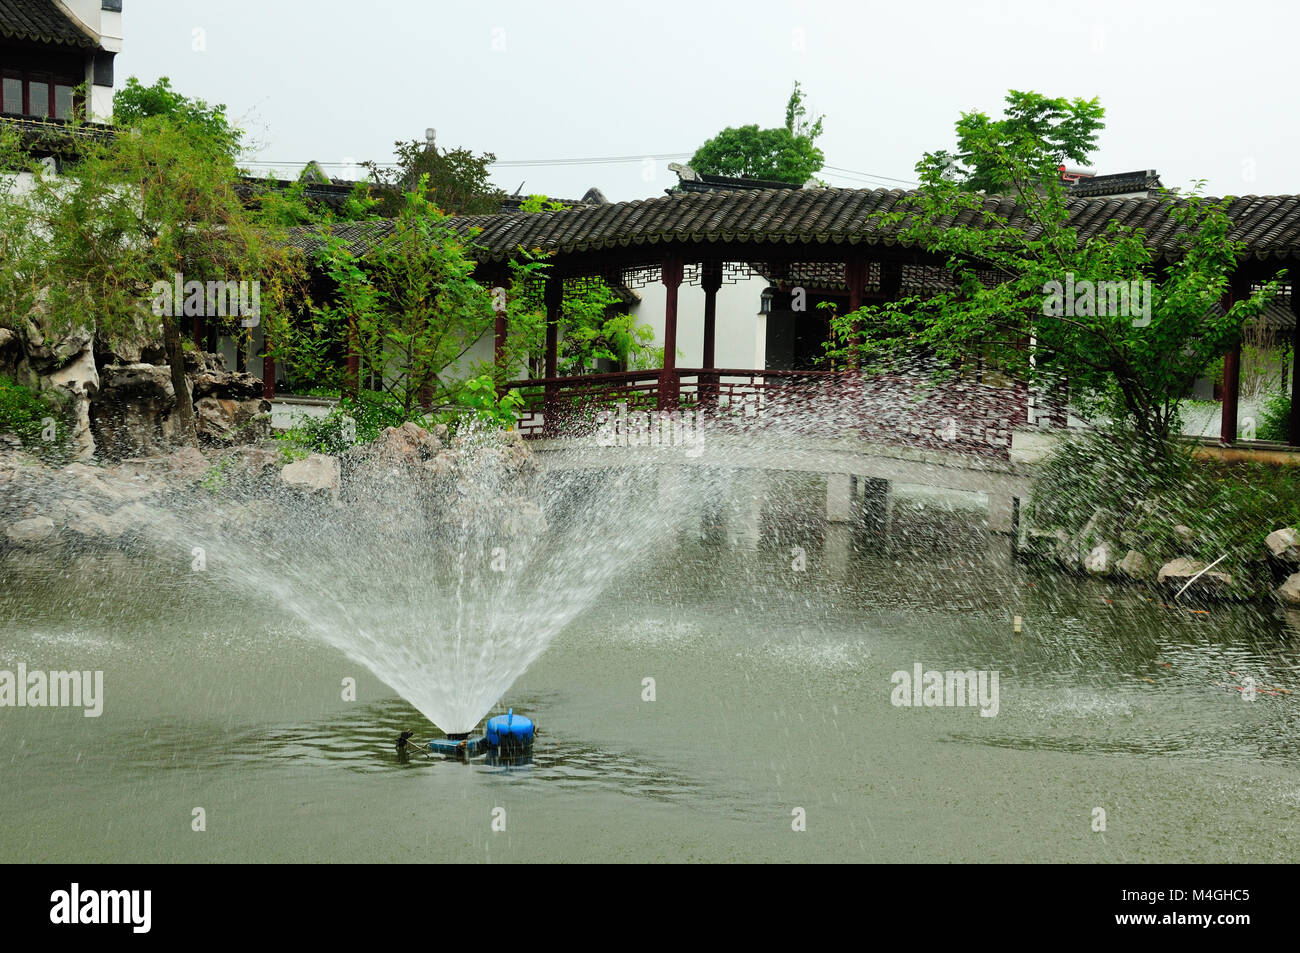 Une fontaine d'eau et couloir couvert au li yuan chinois classique dans le jardin à Shanghai Chine Zhaojialou sur l'image. Banque D'Images